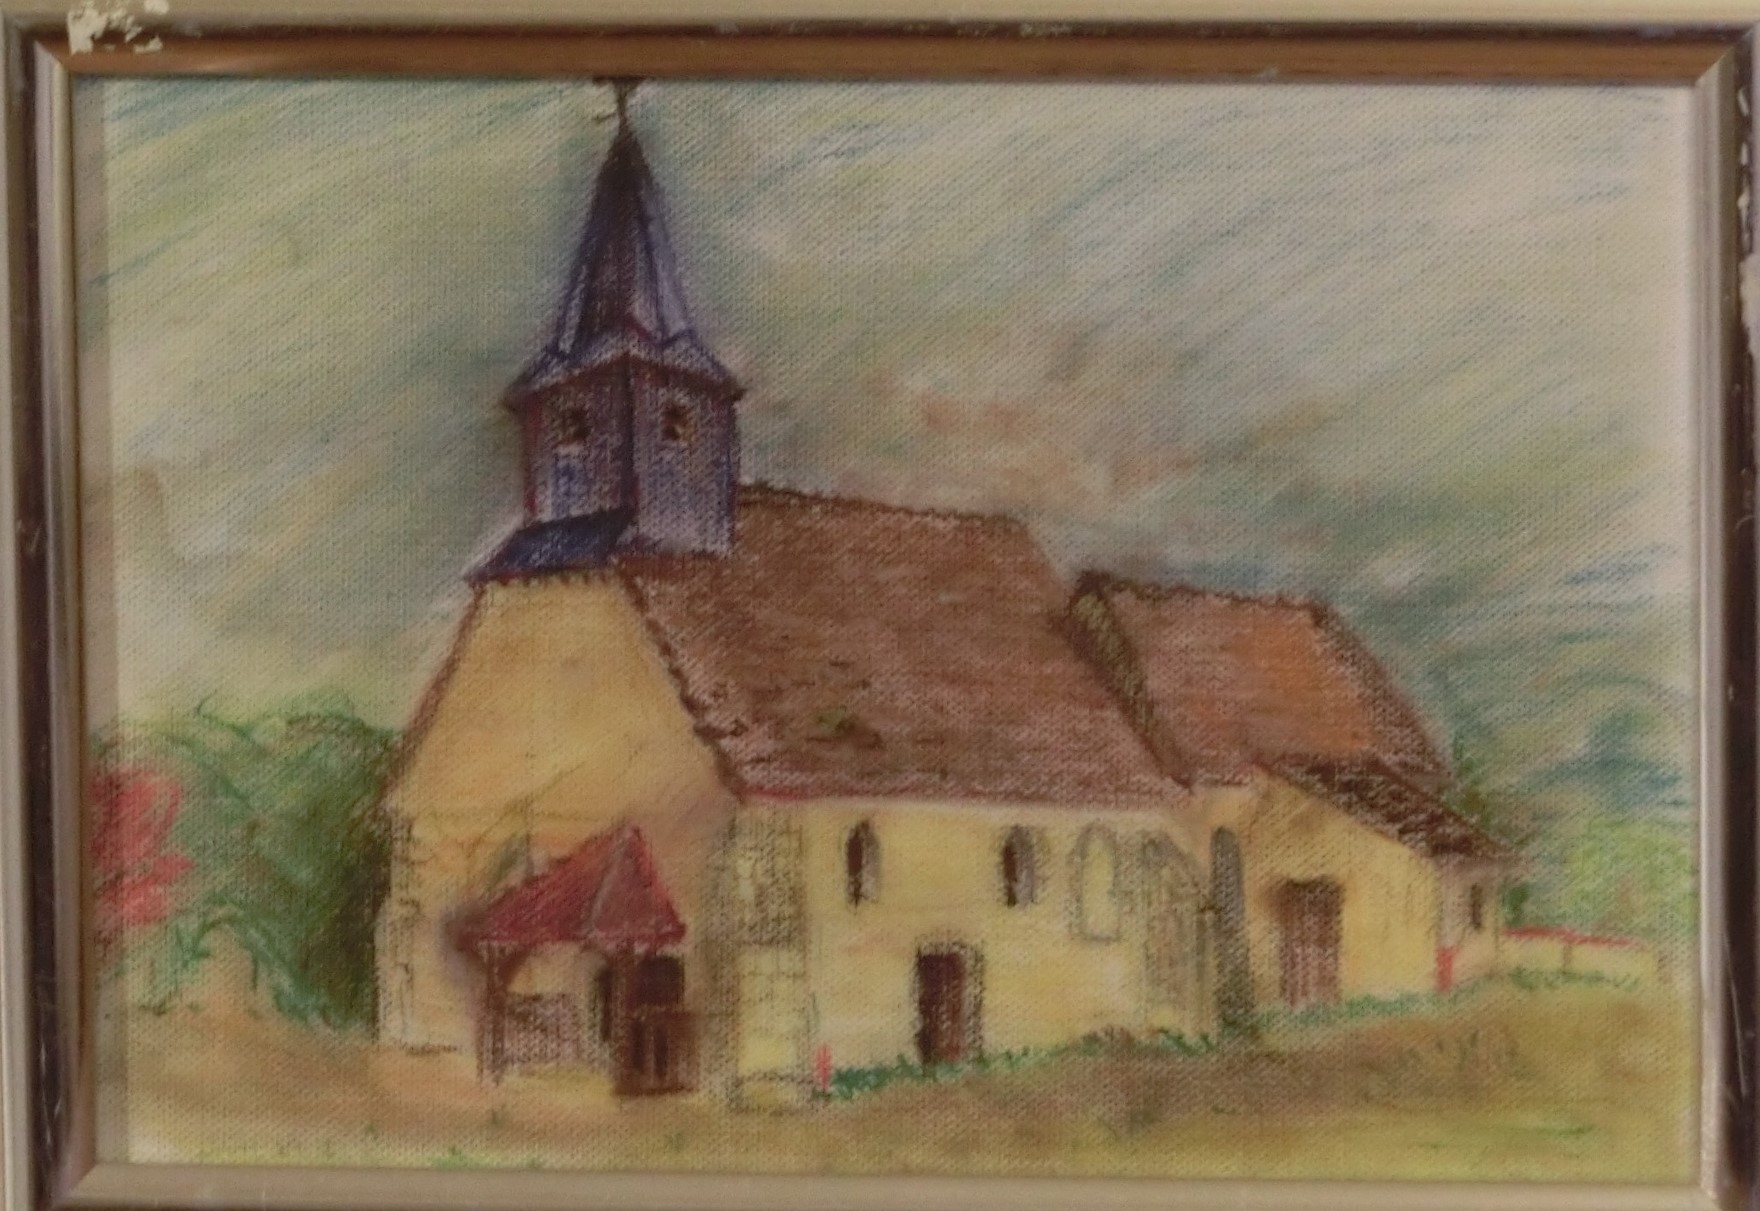 Église de Paucourt